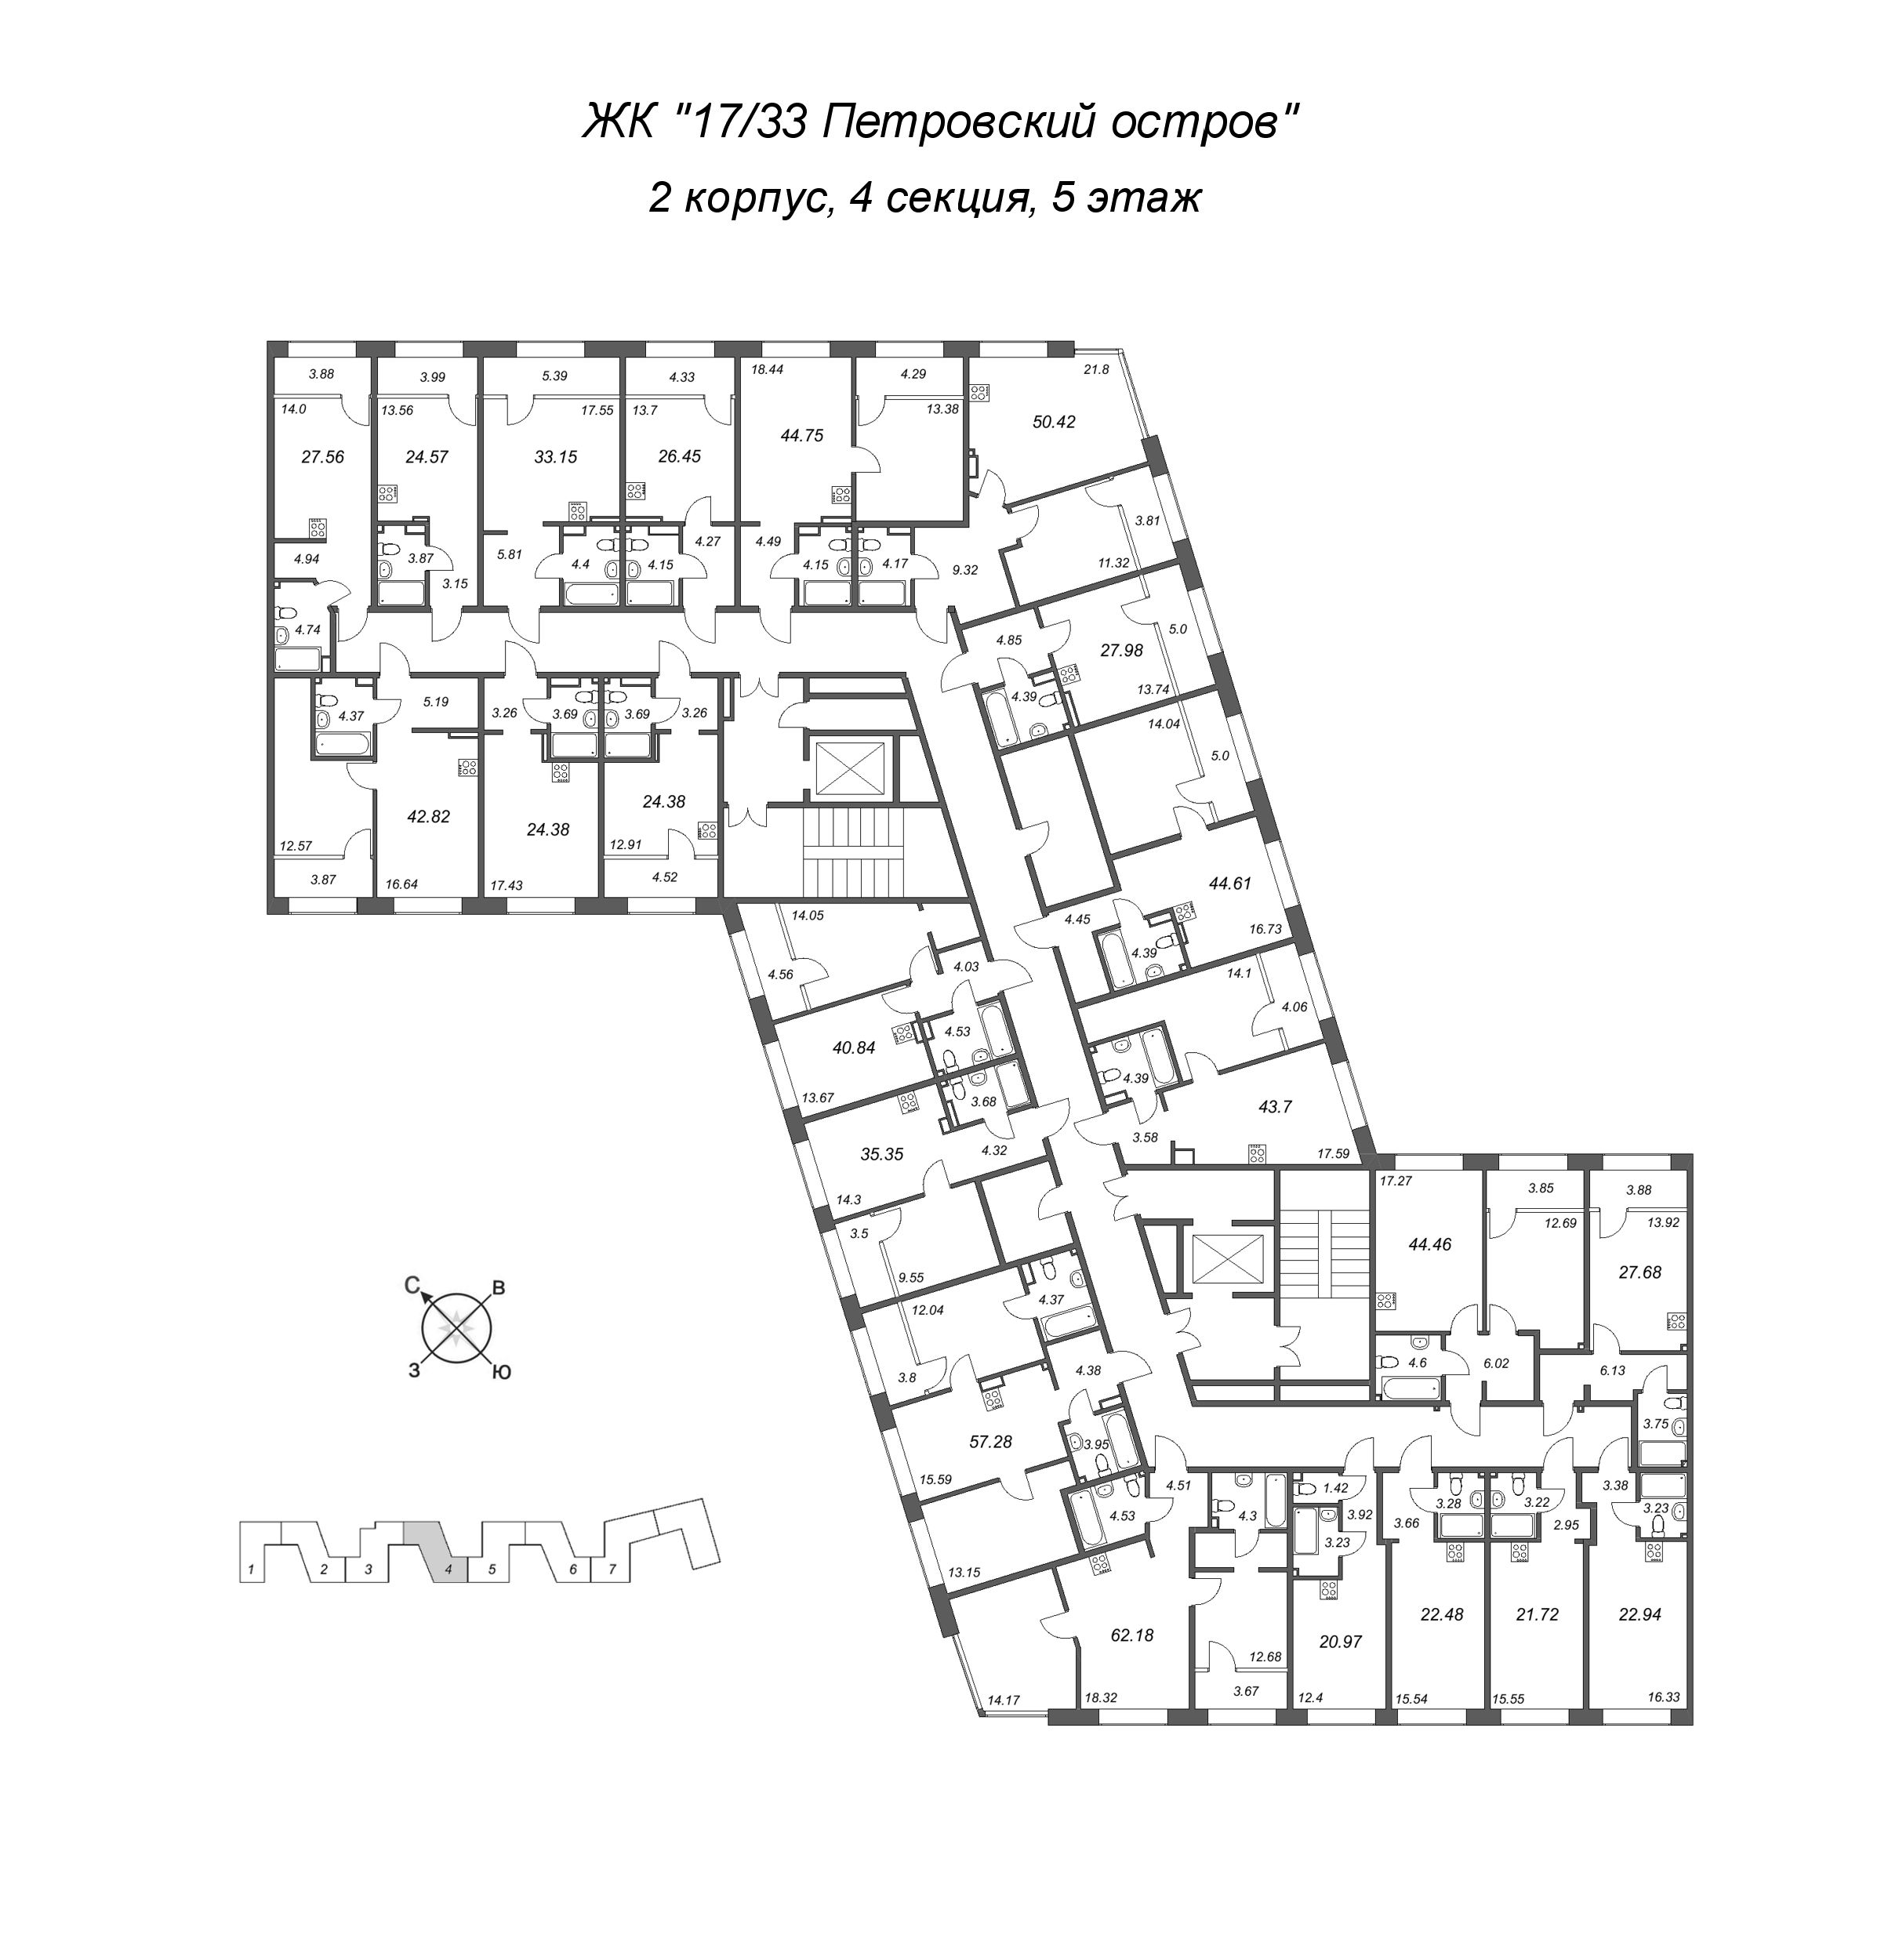 2-комнатная (Евро) квартира, 44.61 м² в ЖК "17/33 Петровский остров" - планировка этажа